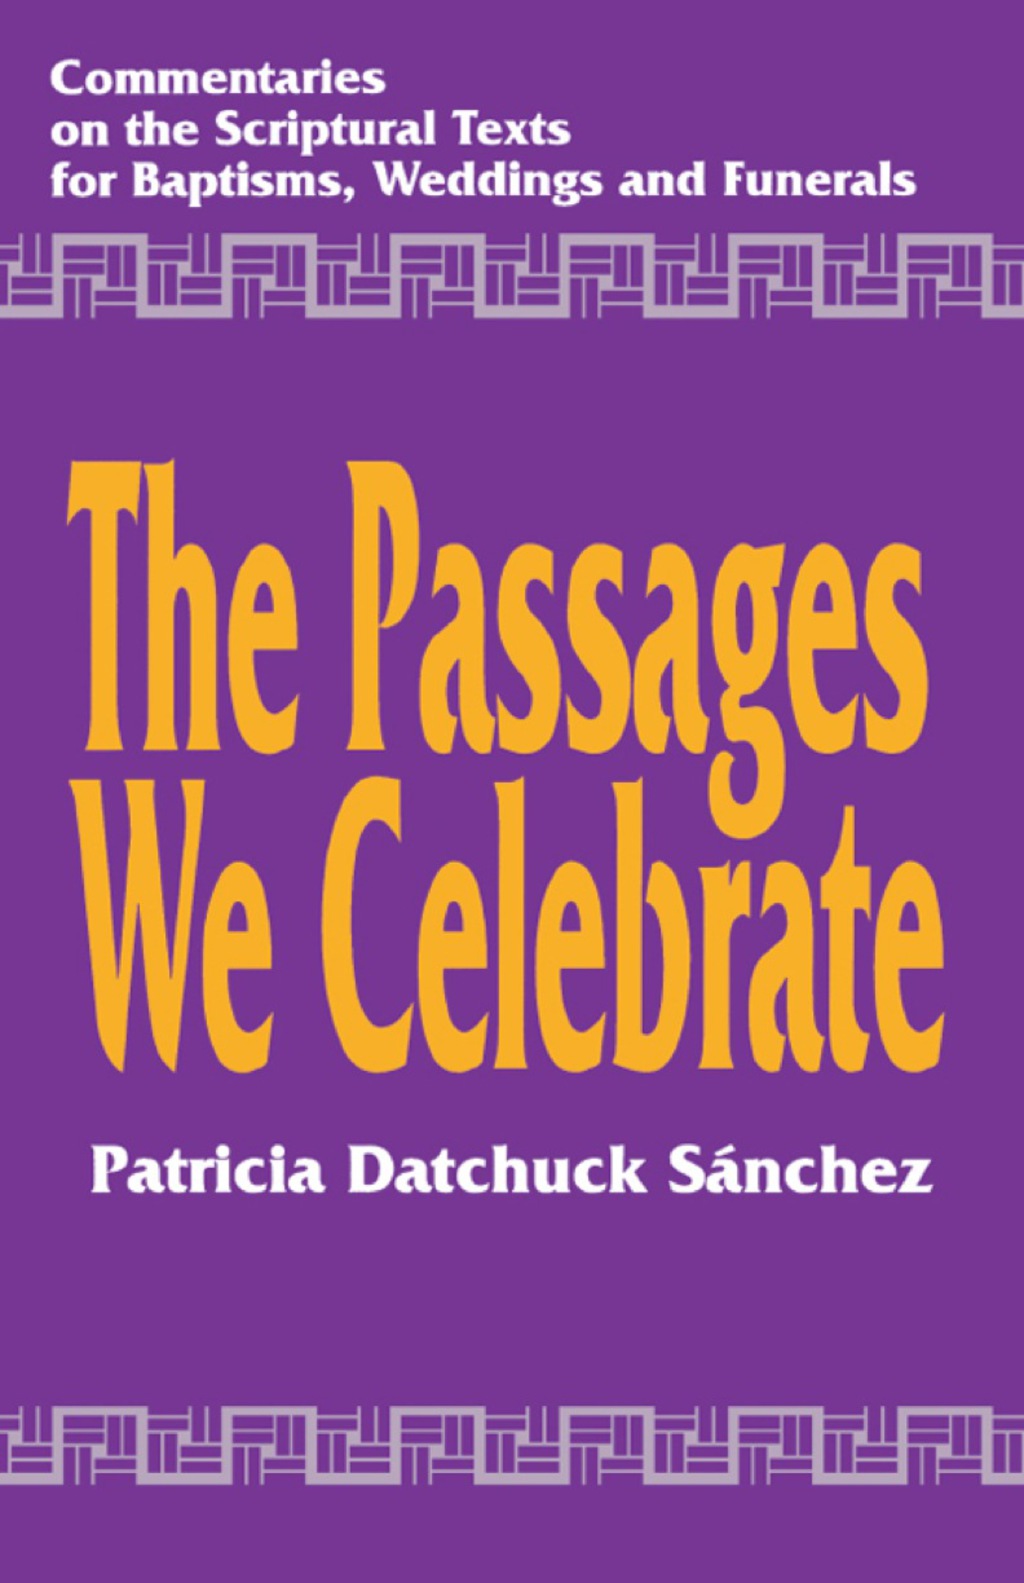 The Passages We Celebrate (eBook Rental) - Patricia Datchuck Sanchez,